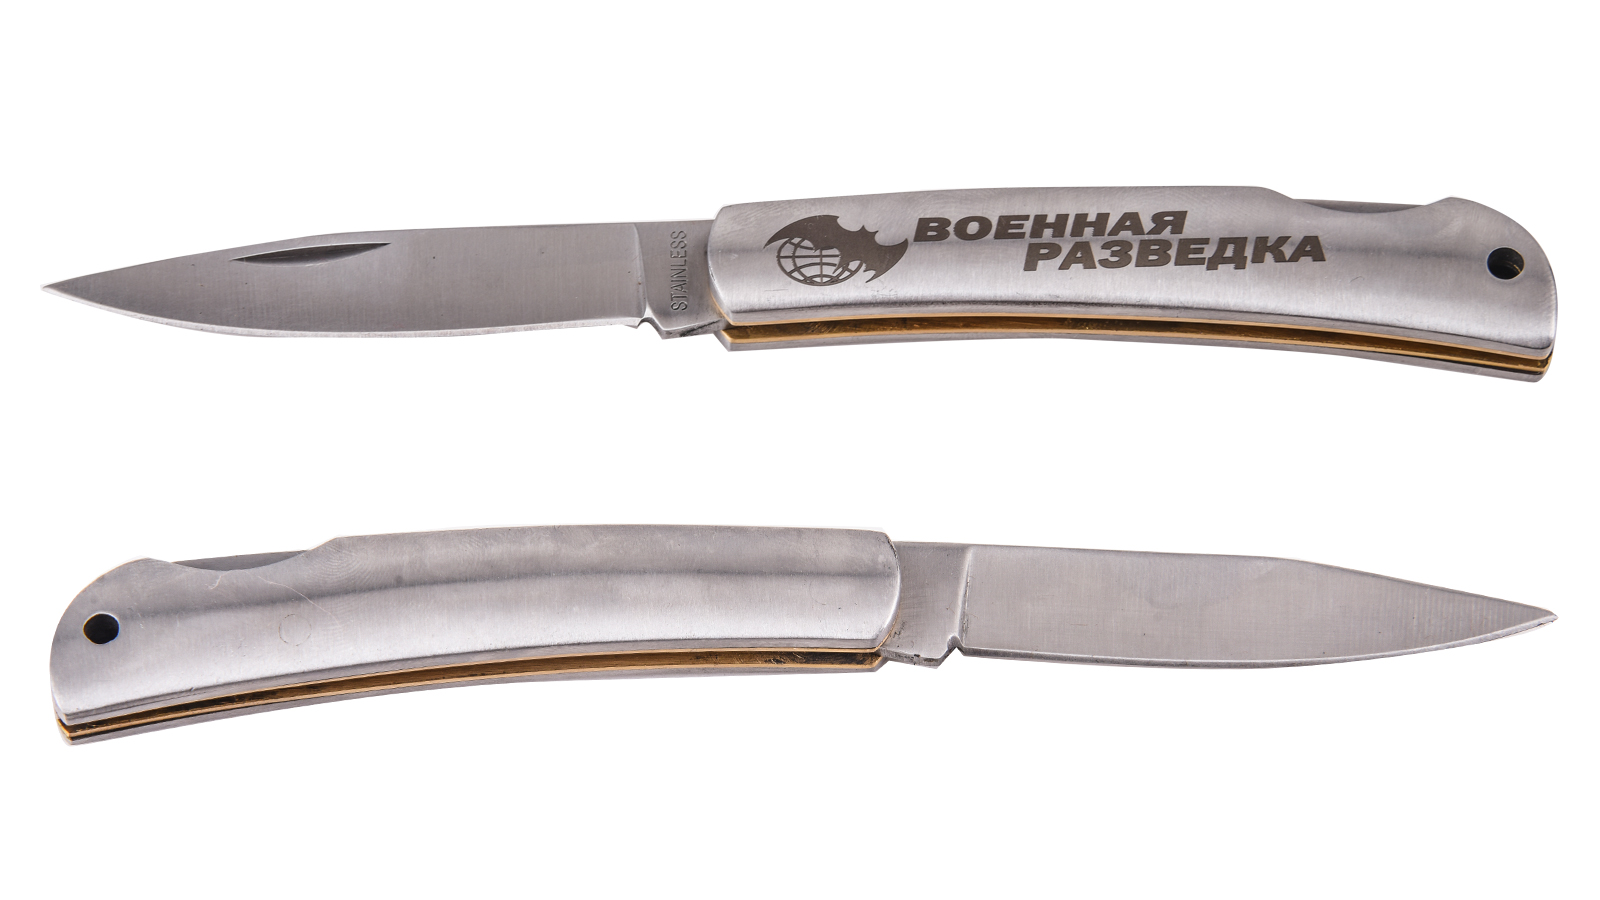 Коллекционный нож разведчика с гравировкой от Военпро